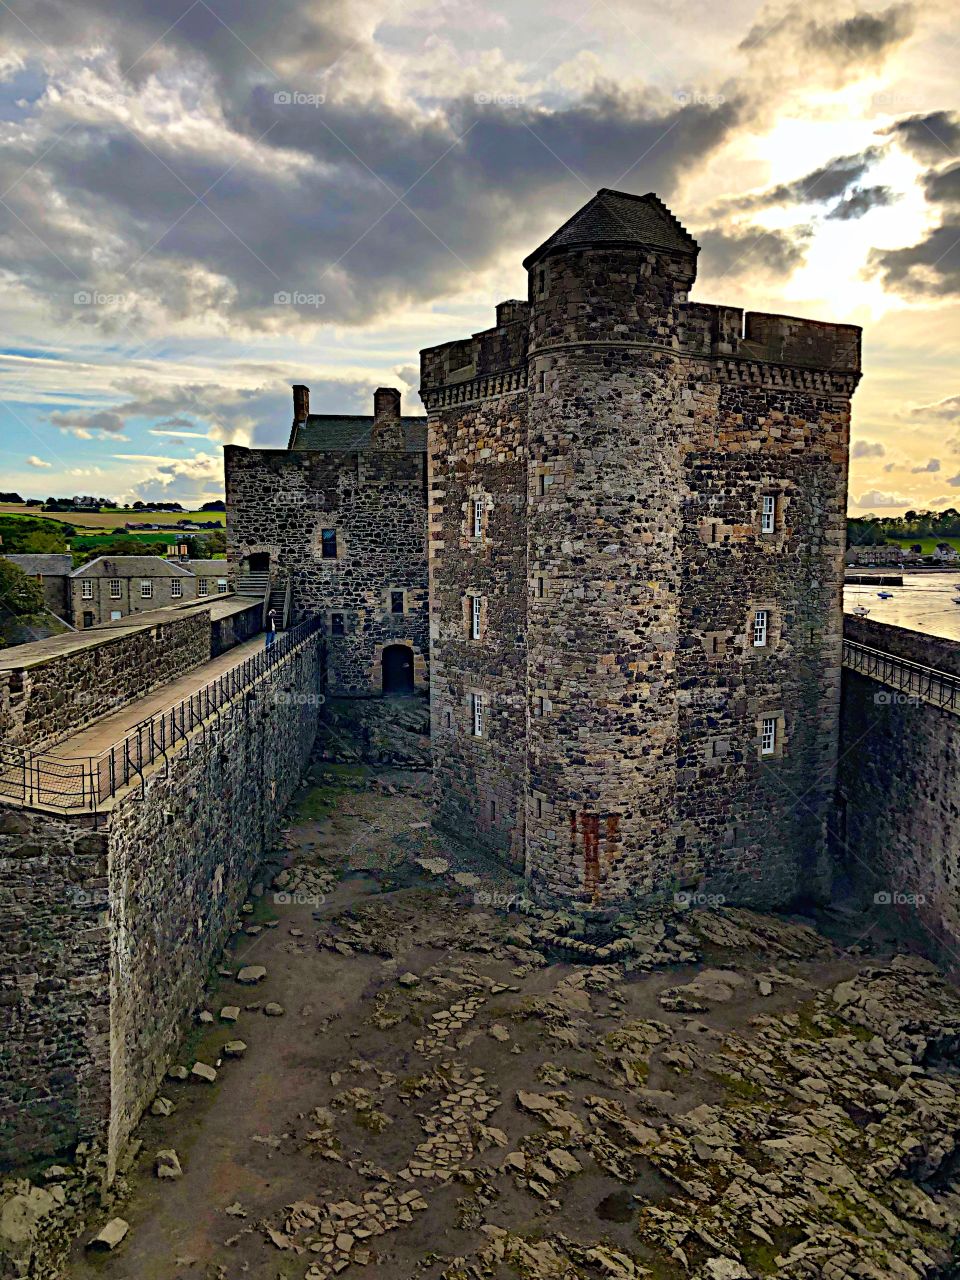 Blackness castle in Scotland 